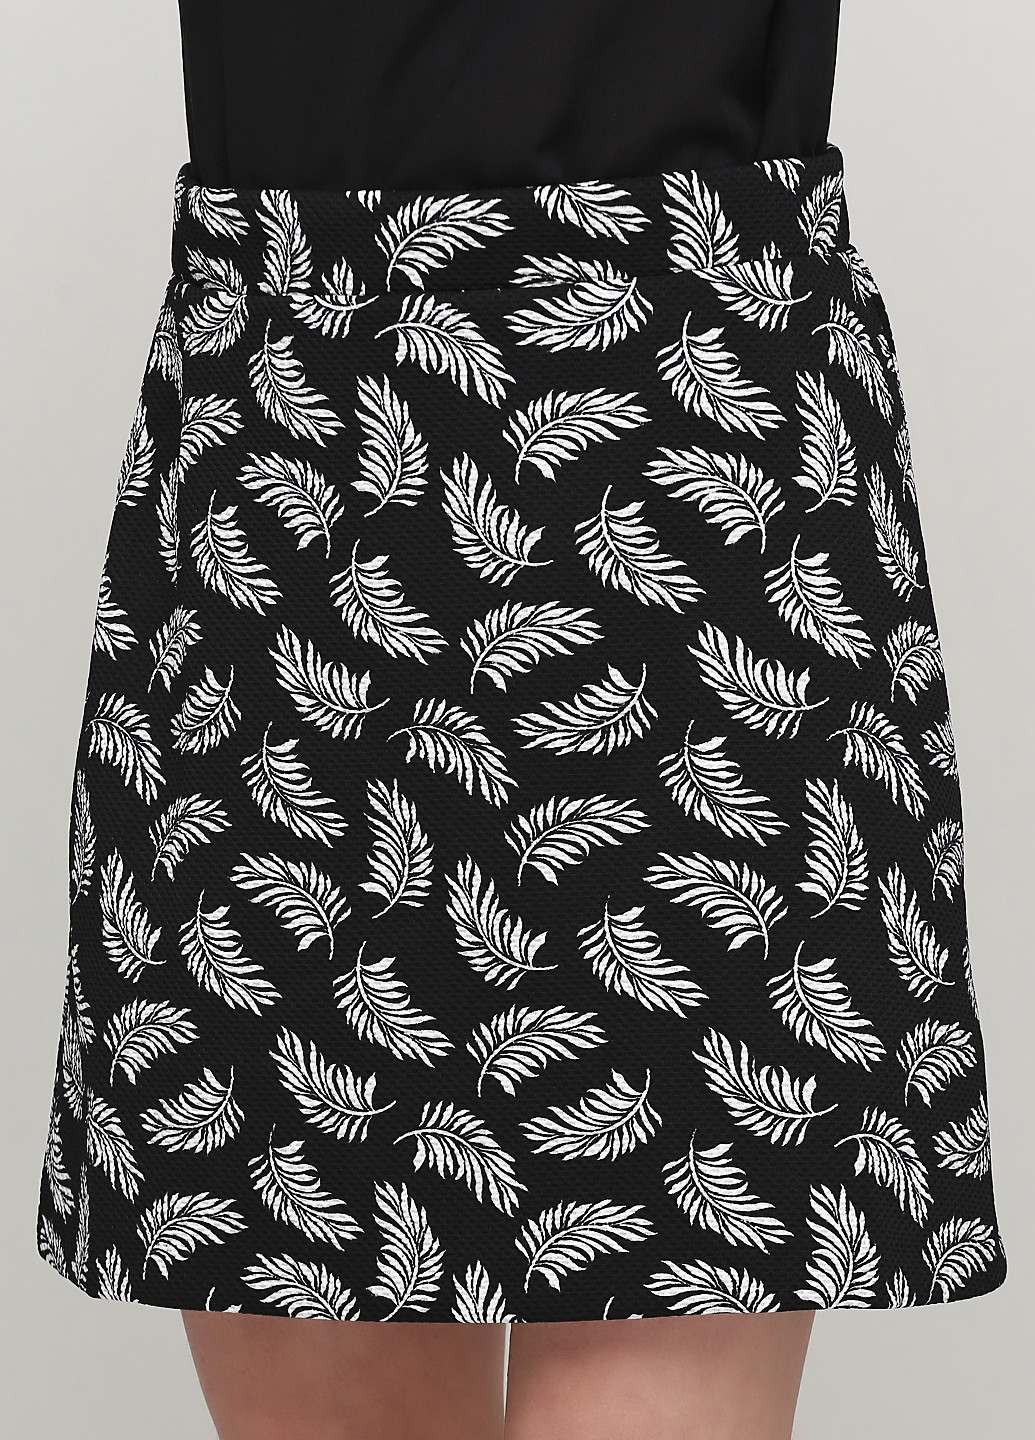 Черно-белая кэжуал с рисунком юбка H&M а-силуэта (трапеция)